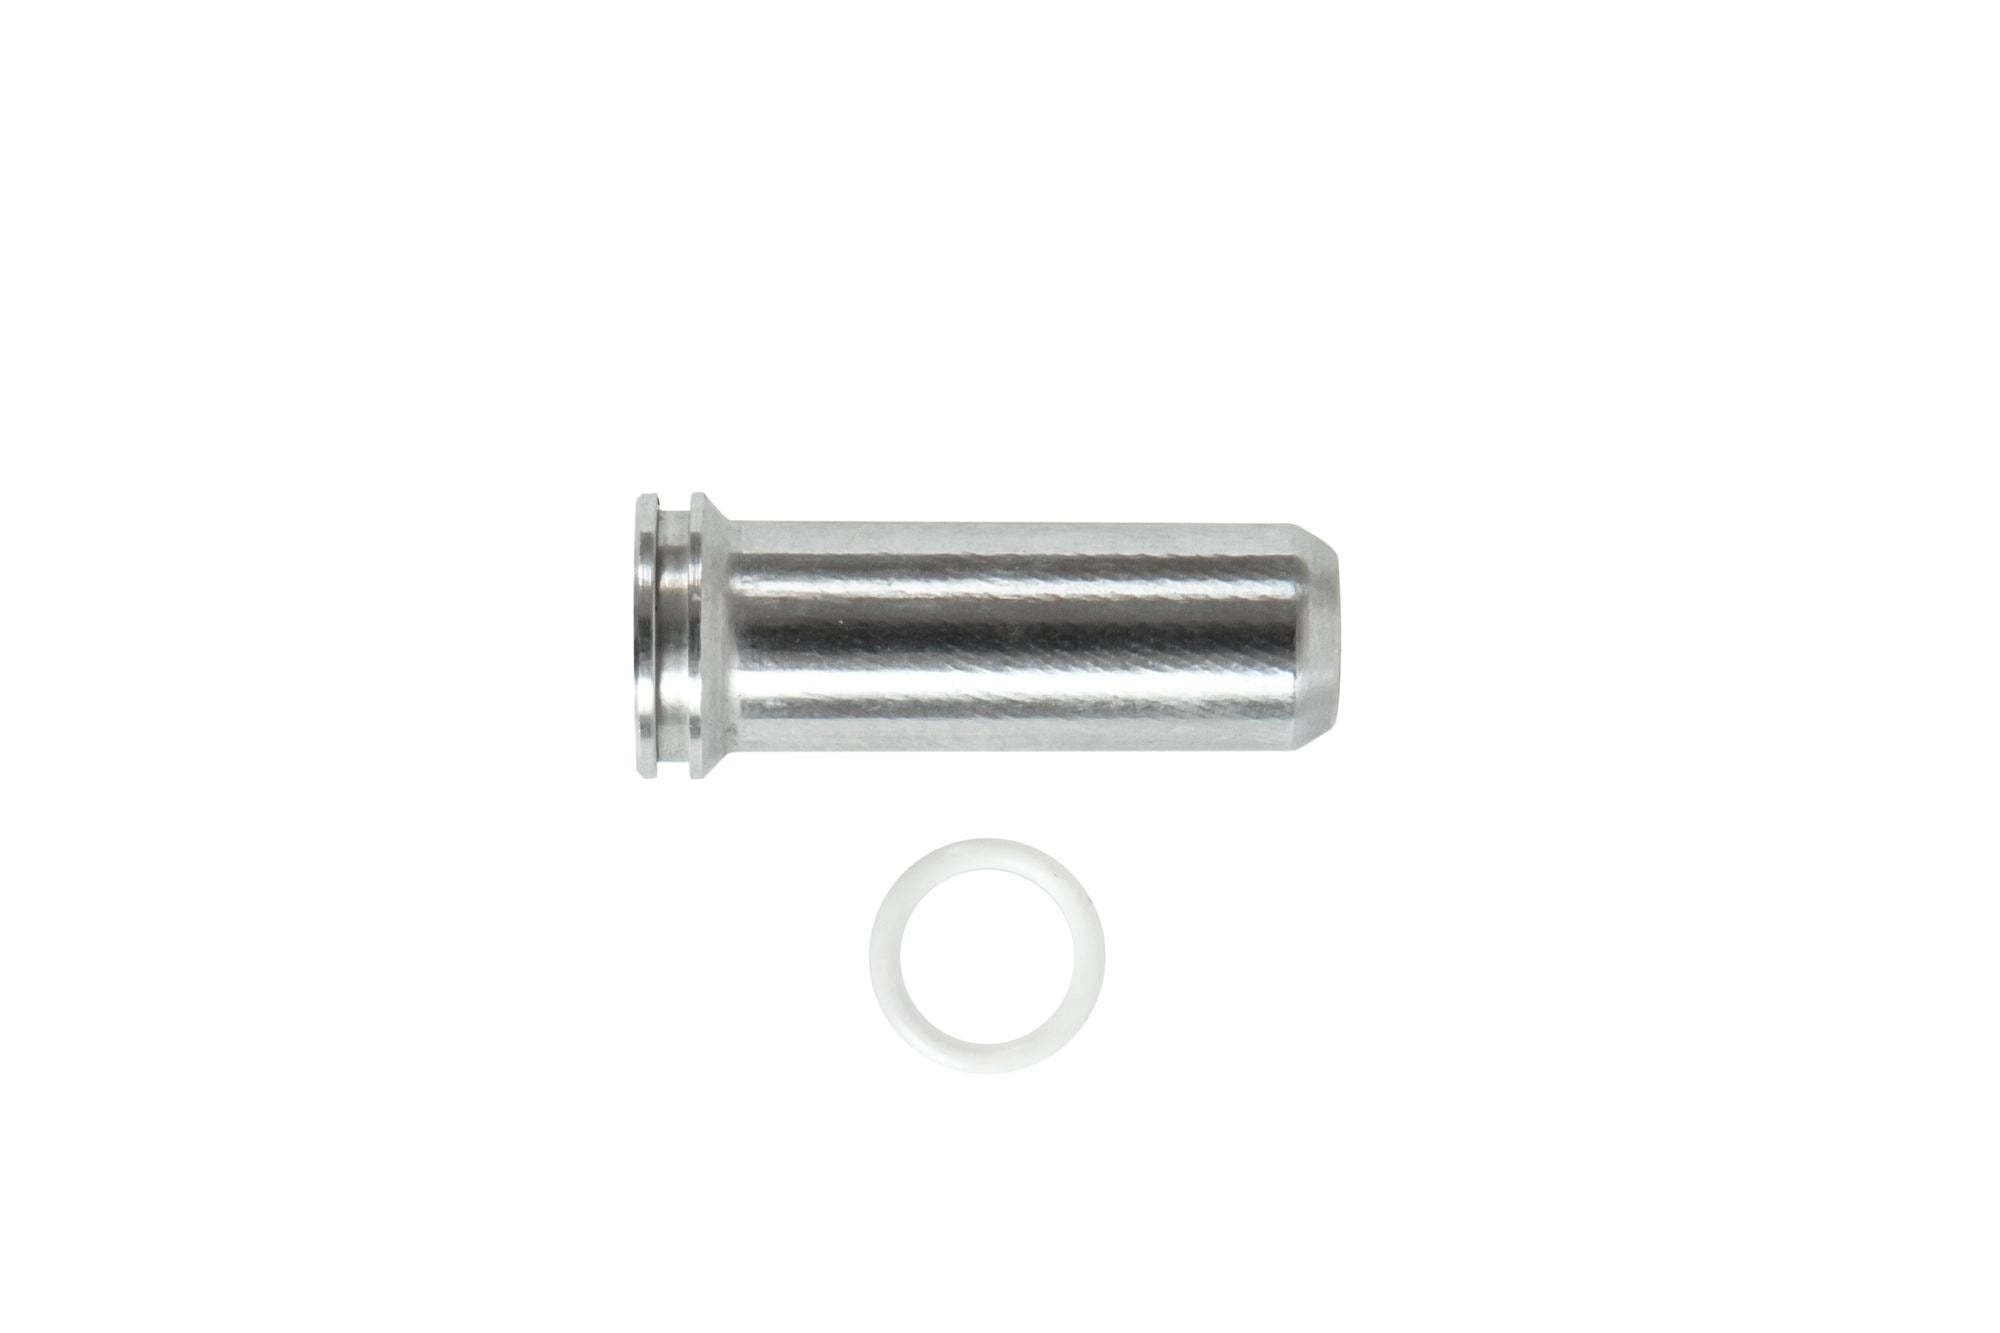 Aluminum CNC Nozzle - 25.9 mm